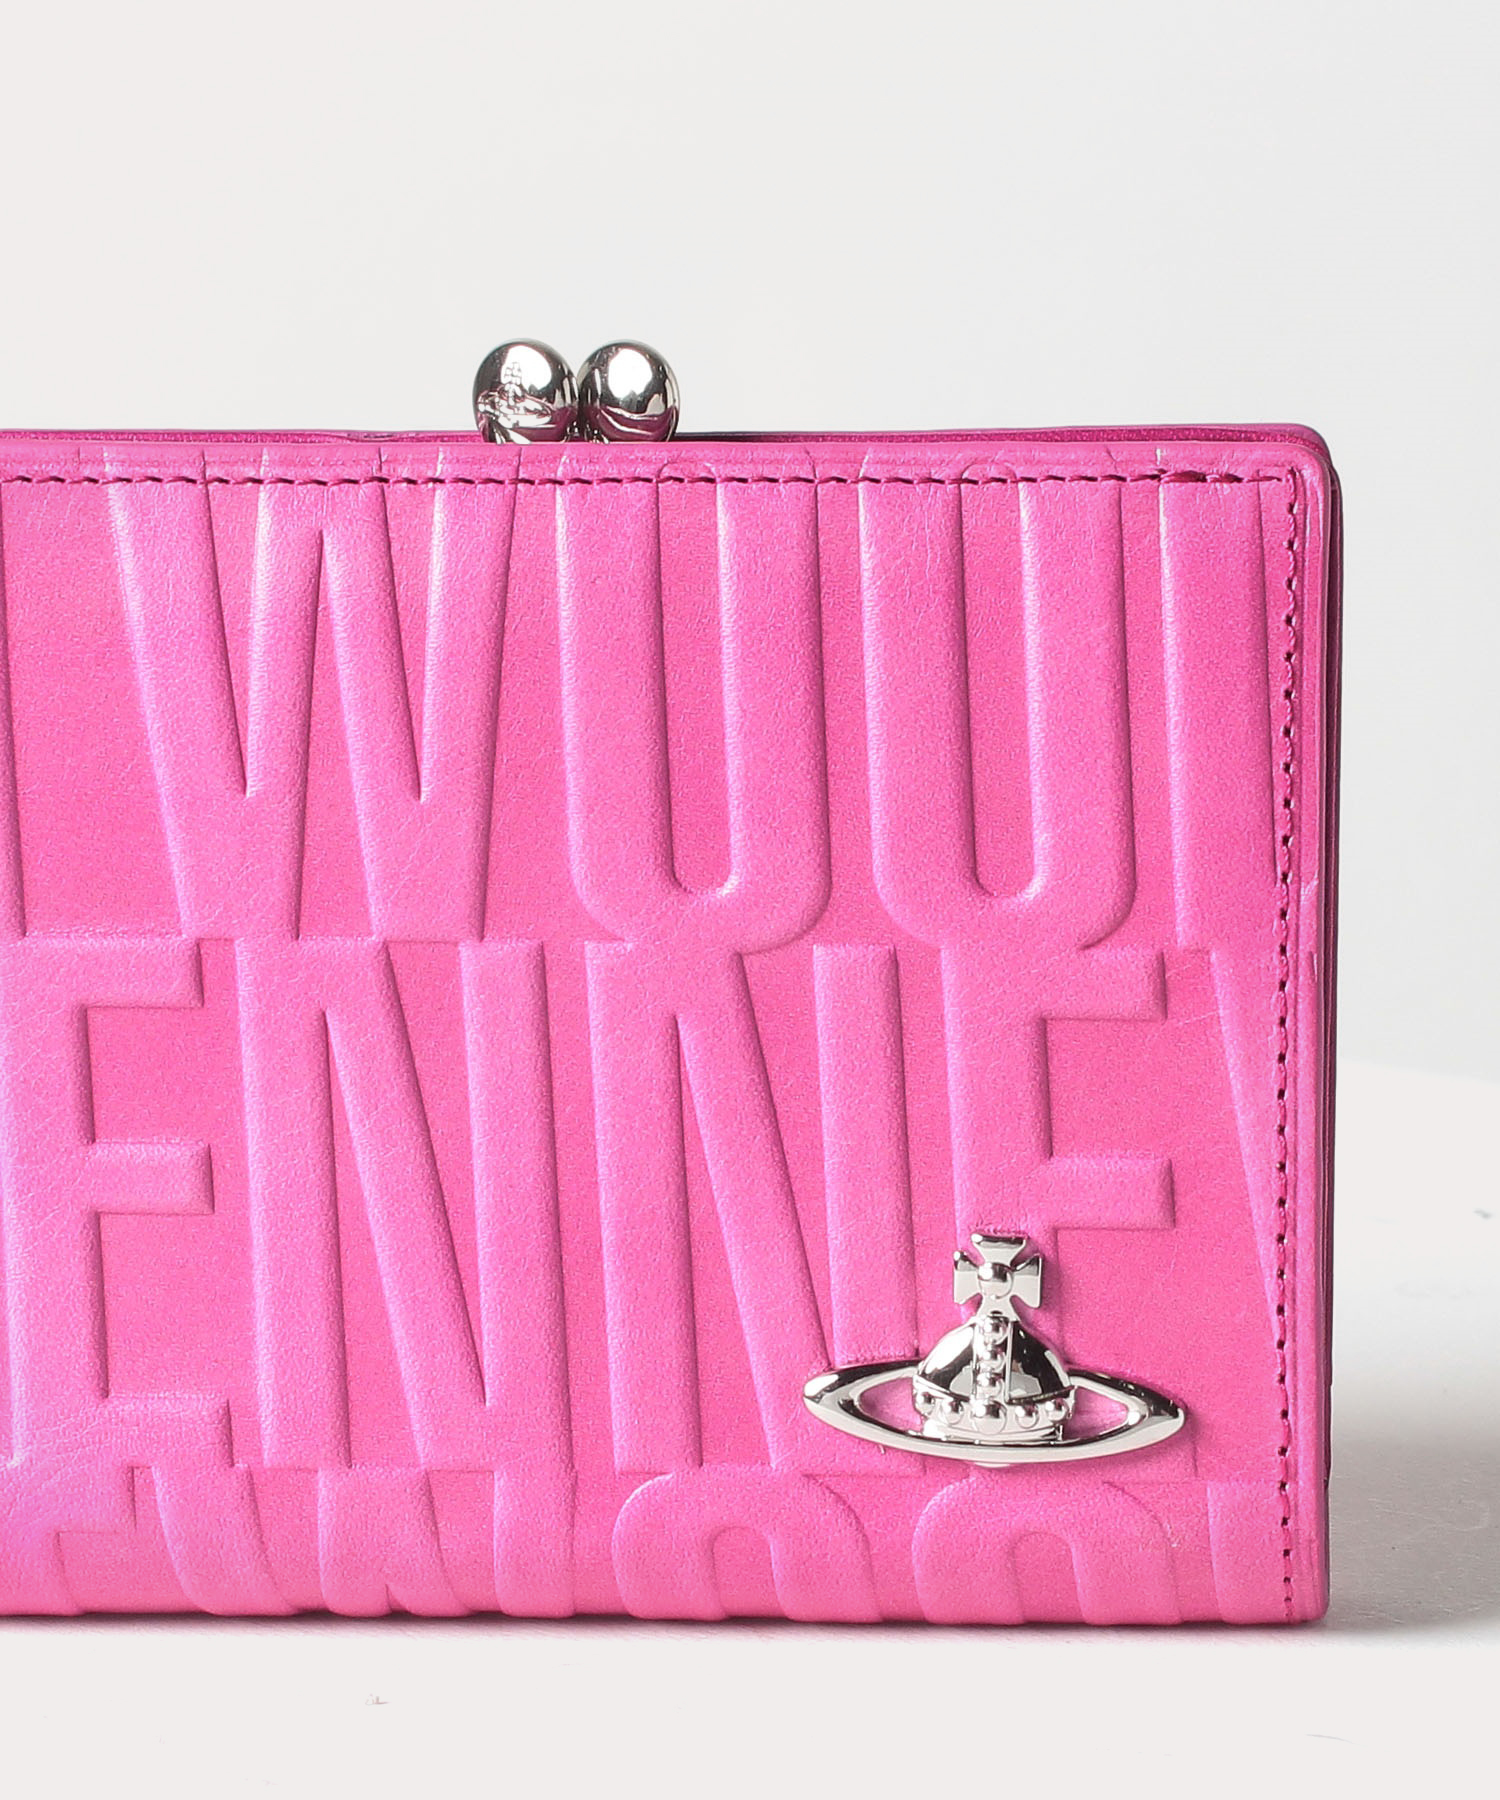 ブライダルボックス 口金二つ折り財布 ピンク レディース 3218v53 公式通販 ヴィヴィアン ウエストウッド Vivienne Westwood